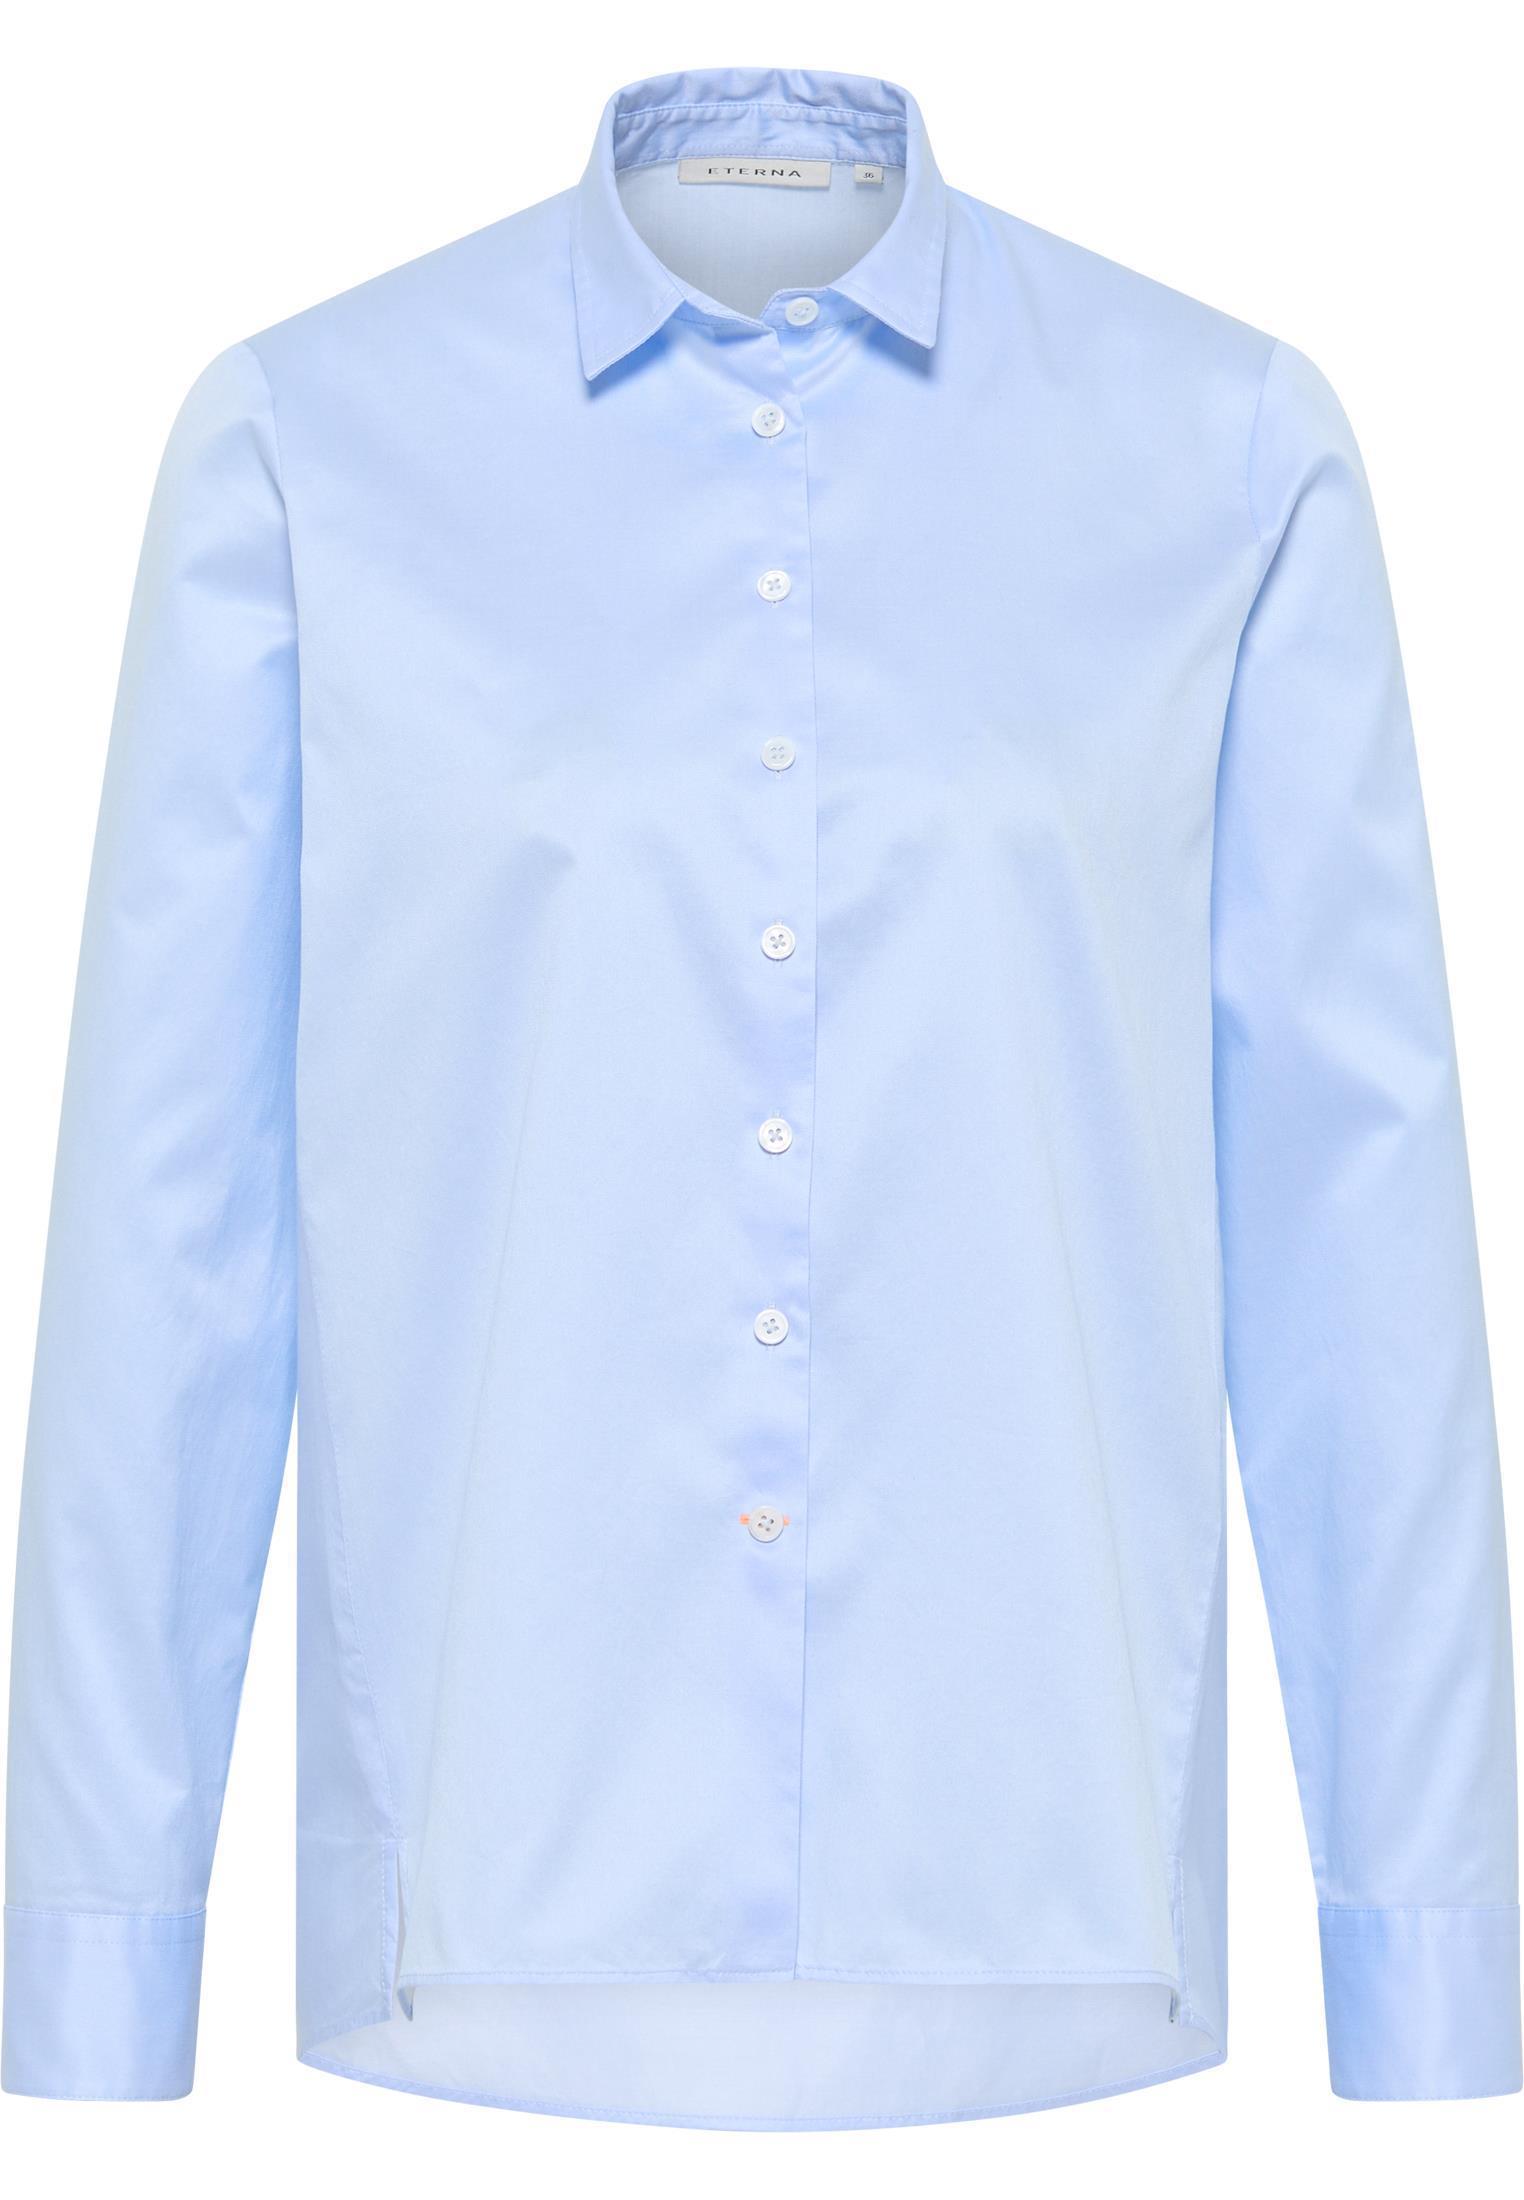 Bluse SOFT LUXURY SHIRT Lose besticken cm cotton Hellblau 63 Fit bedrucken und Loose Hemd-Kragen | Eterna® 34 Fit ART® günstig